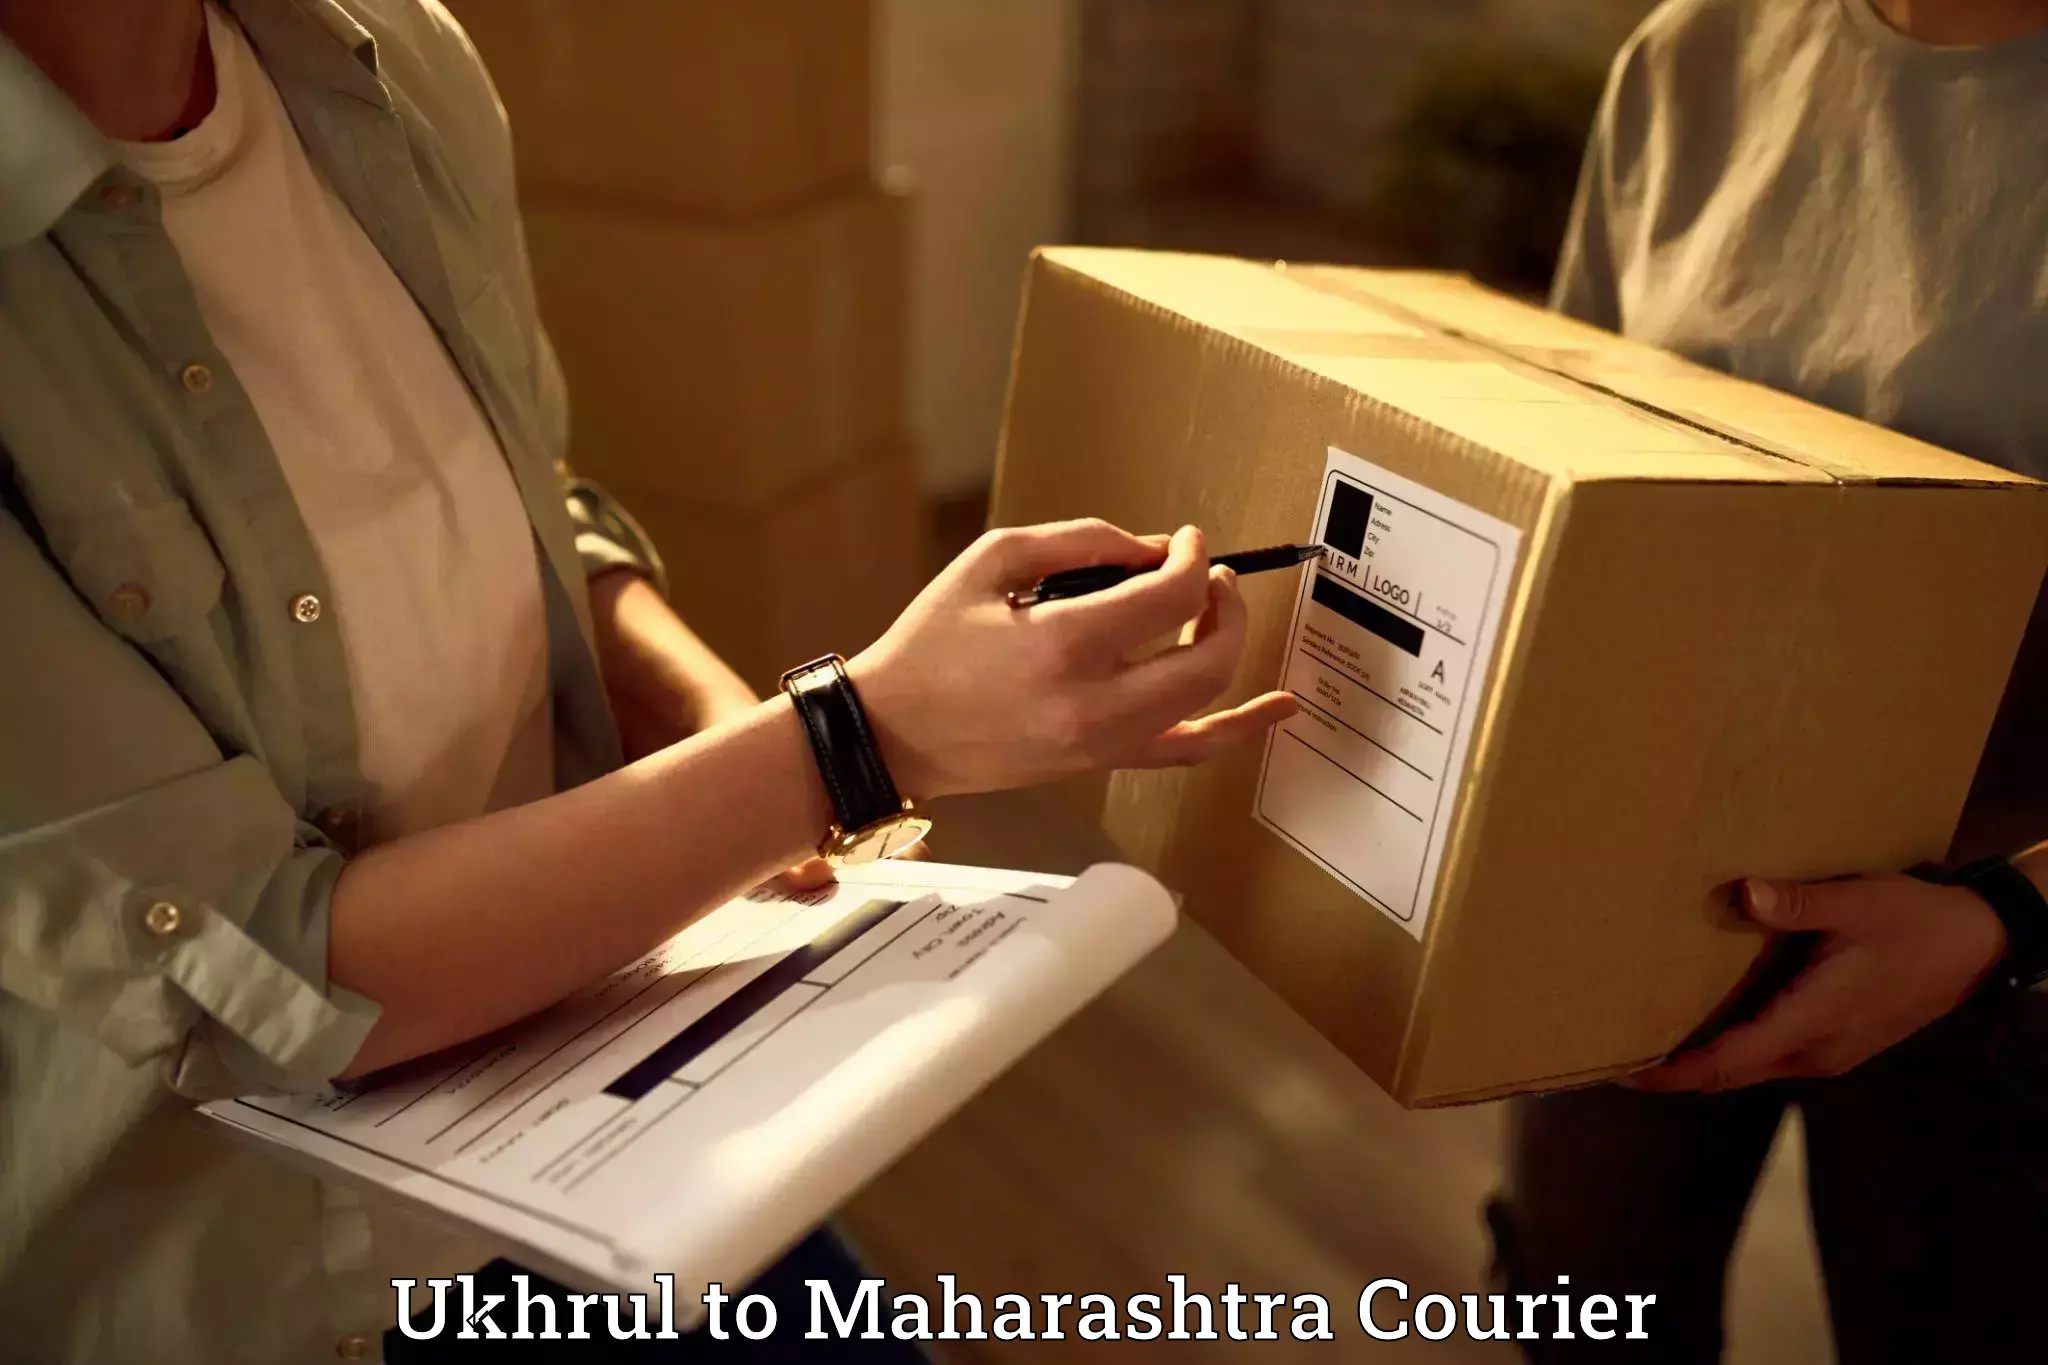 Expert packing and moving Ukhrul to Maharashtra